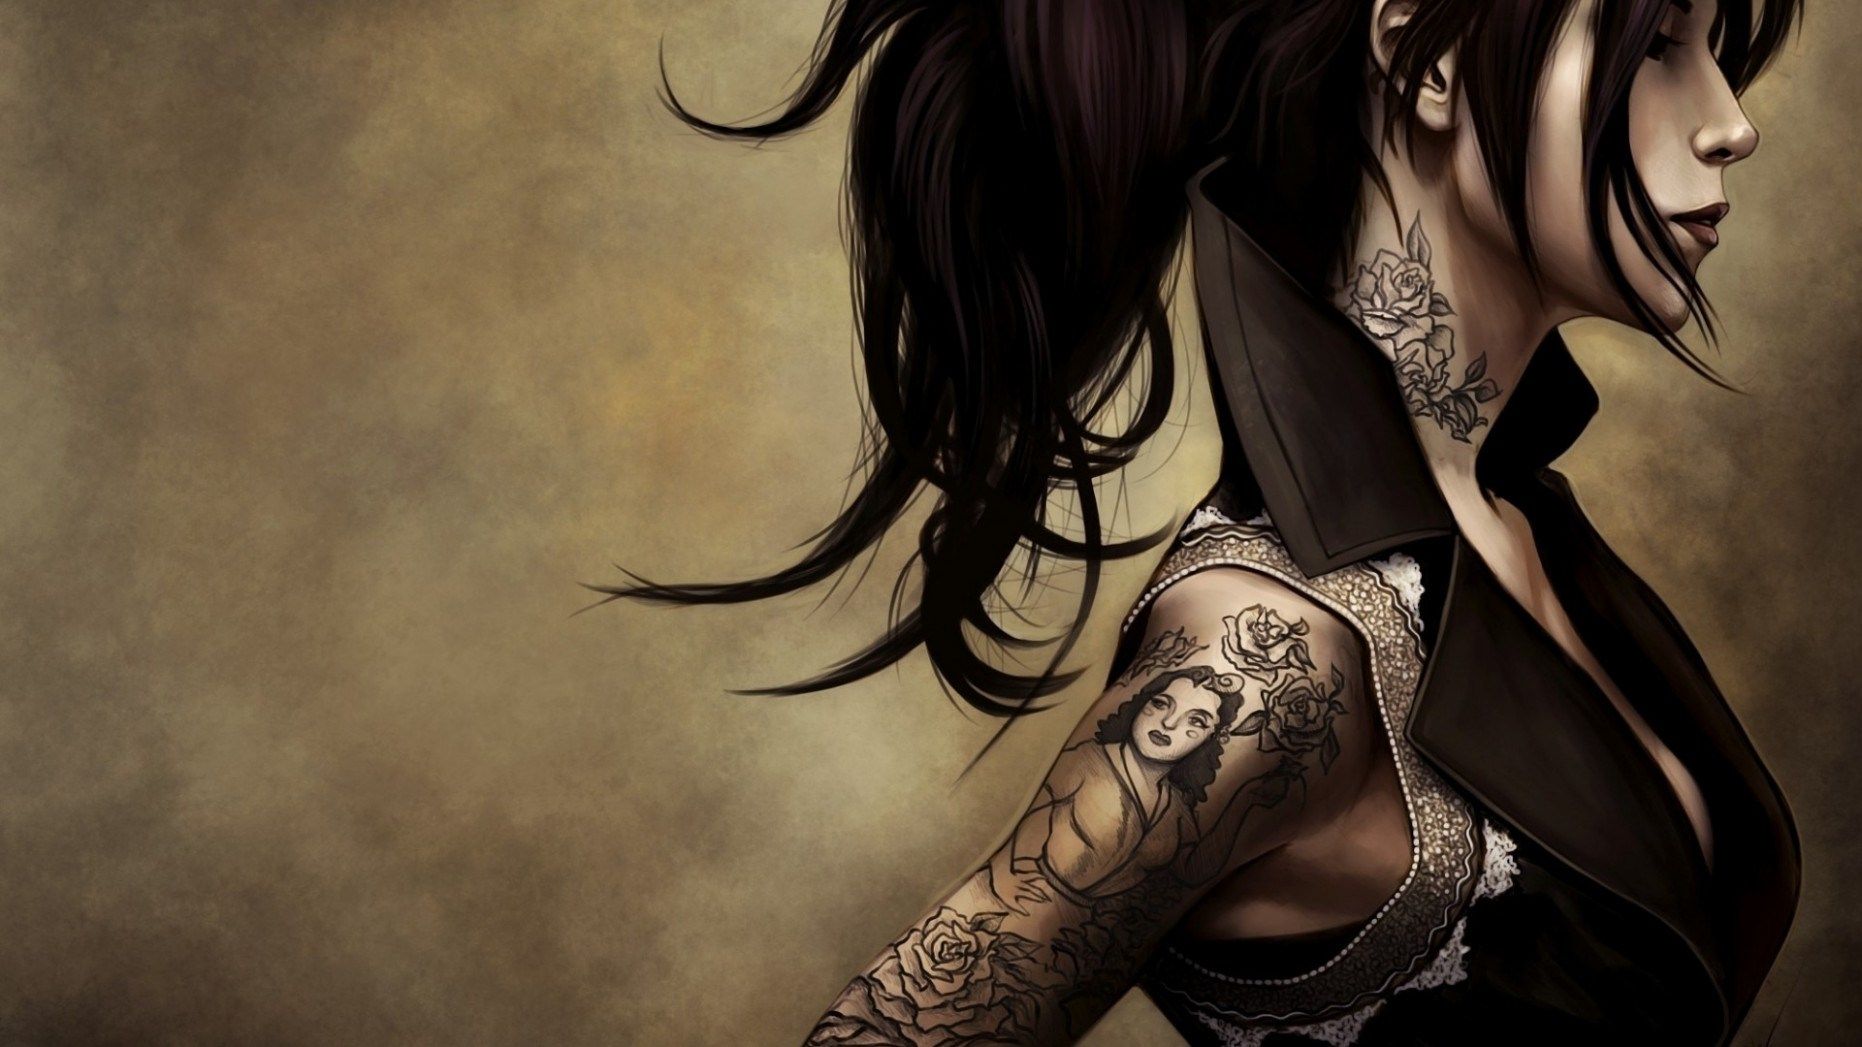 Fondos de tatuajes | Mejores fondos de pantalla - art tattoo girls